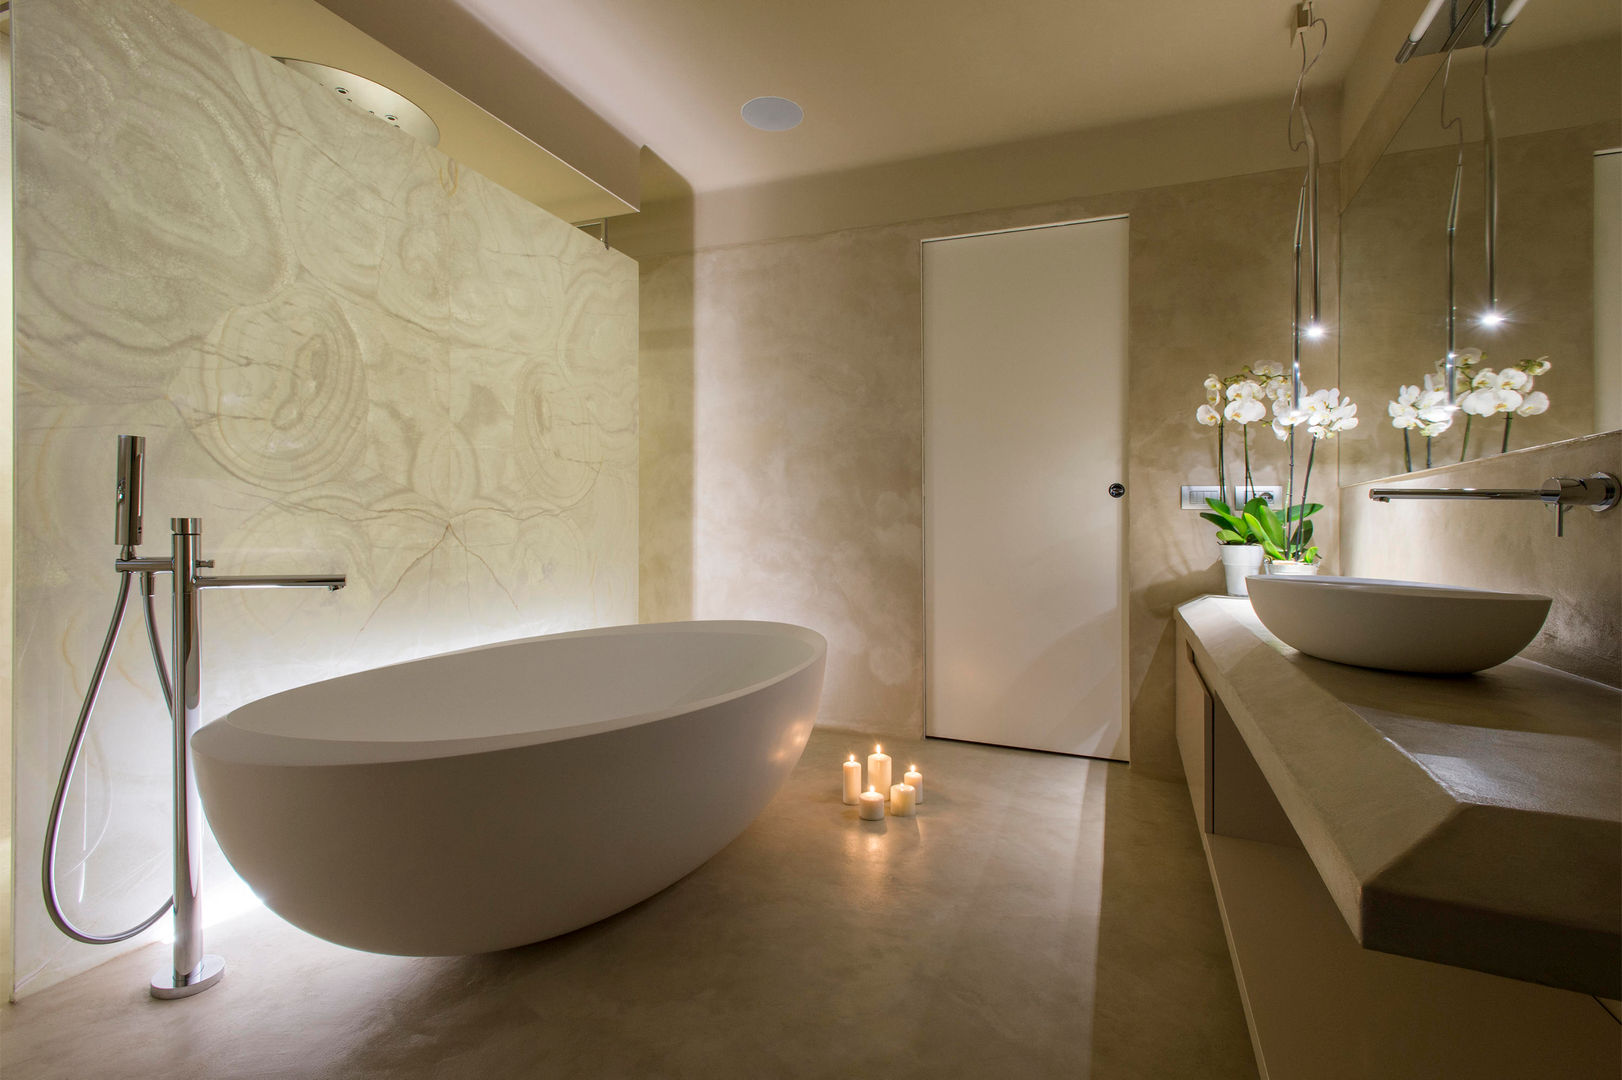 Sala da bagno con doccia Spa Archifacturing Spa moderna Cemento spa,vasca centro stanza,sala da bagno,cemento decorativo,doccia walk in